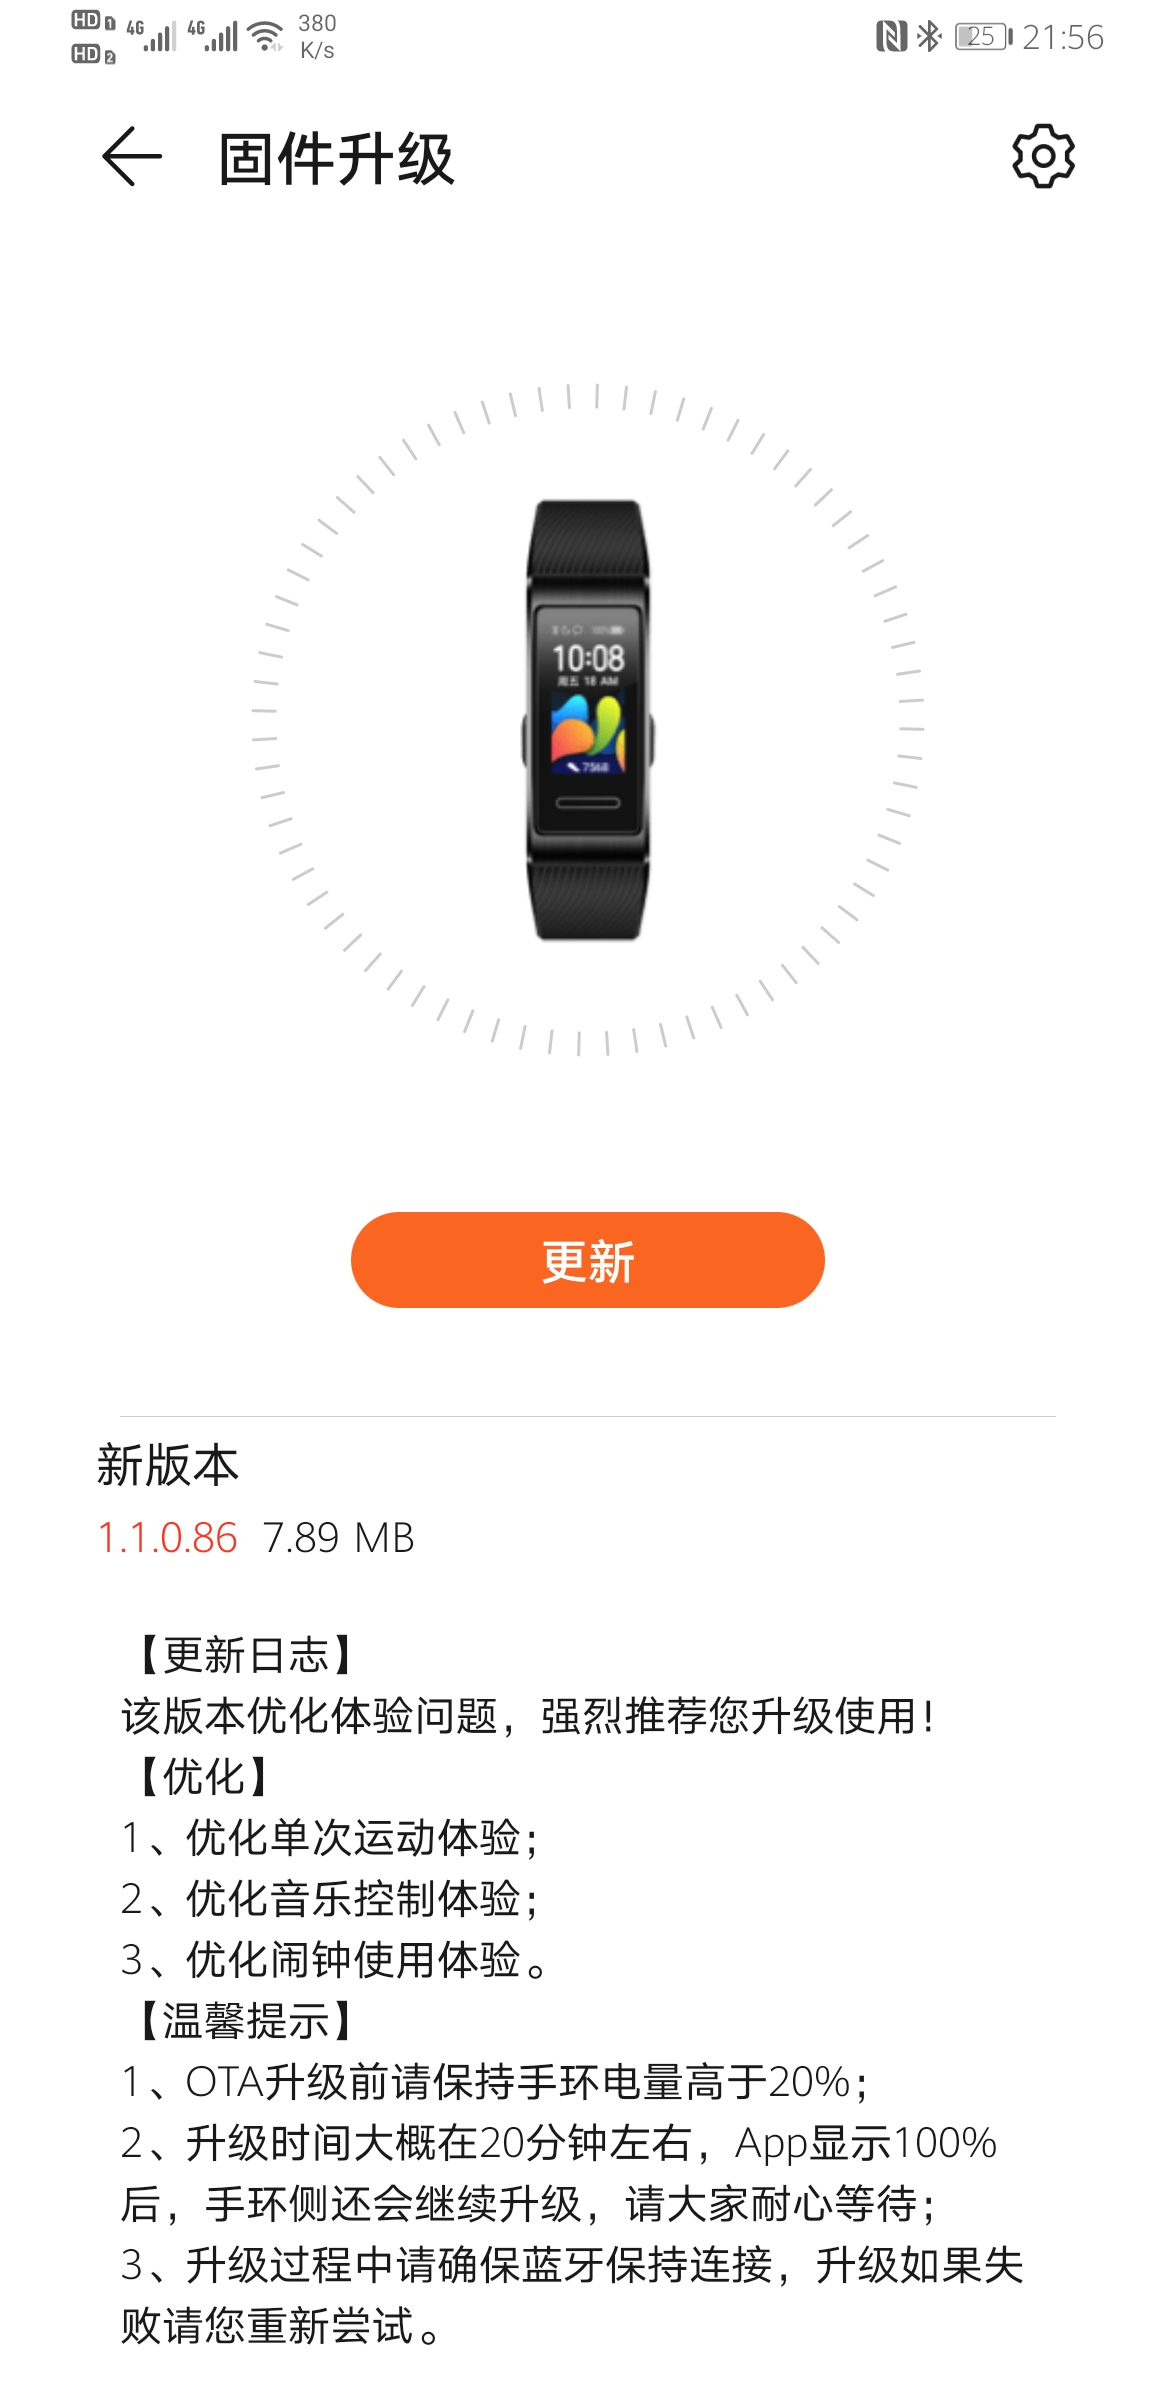 Huawei Band 4 Pro 1.1.0.86 update